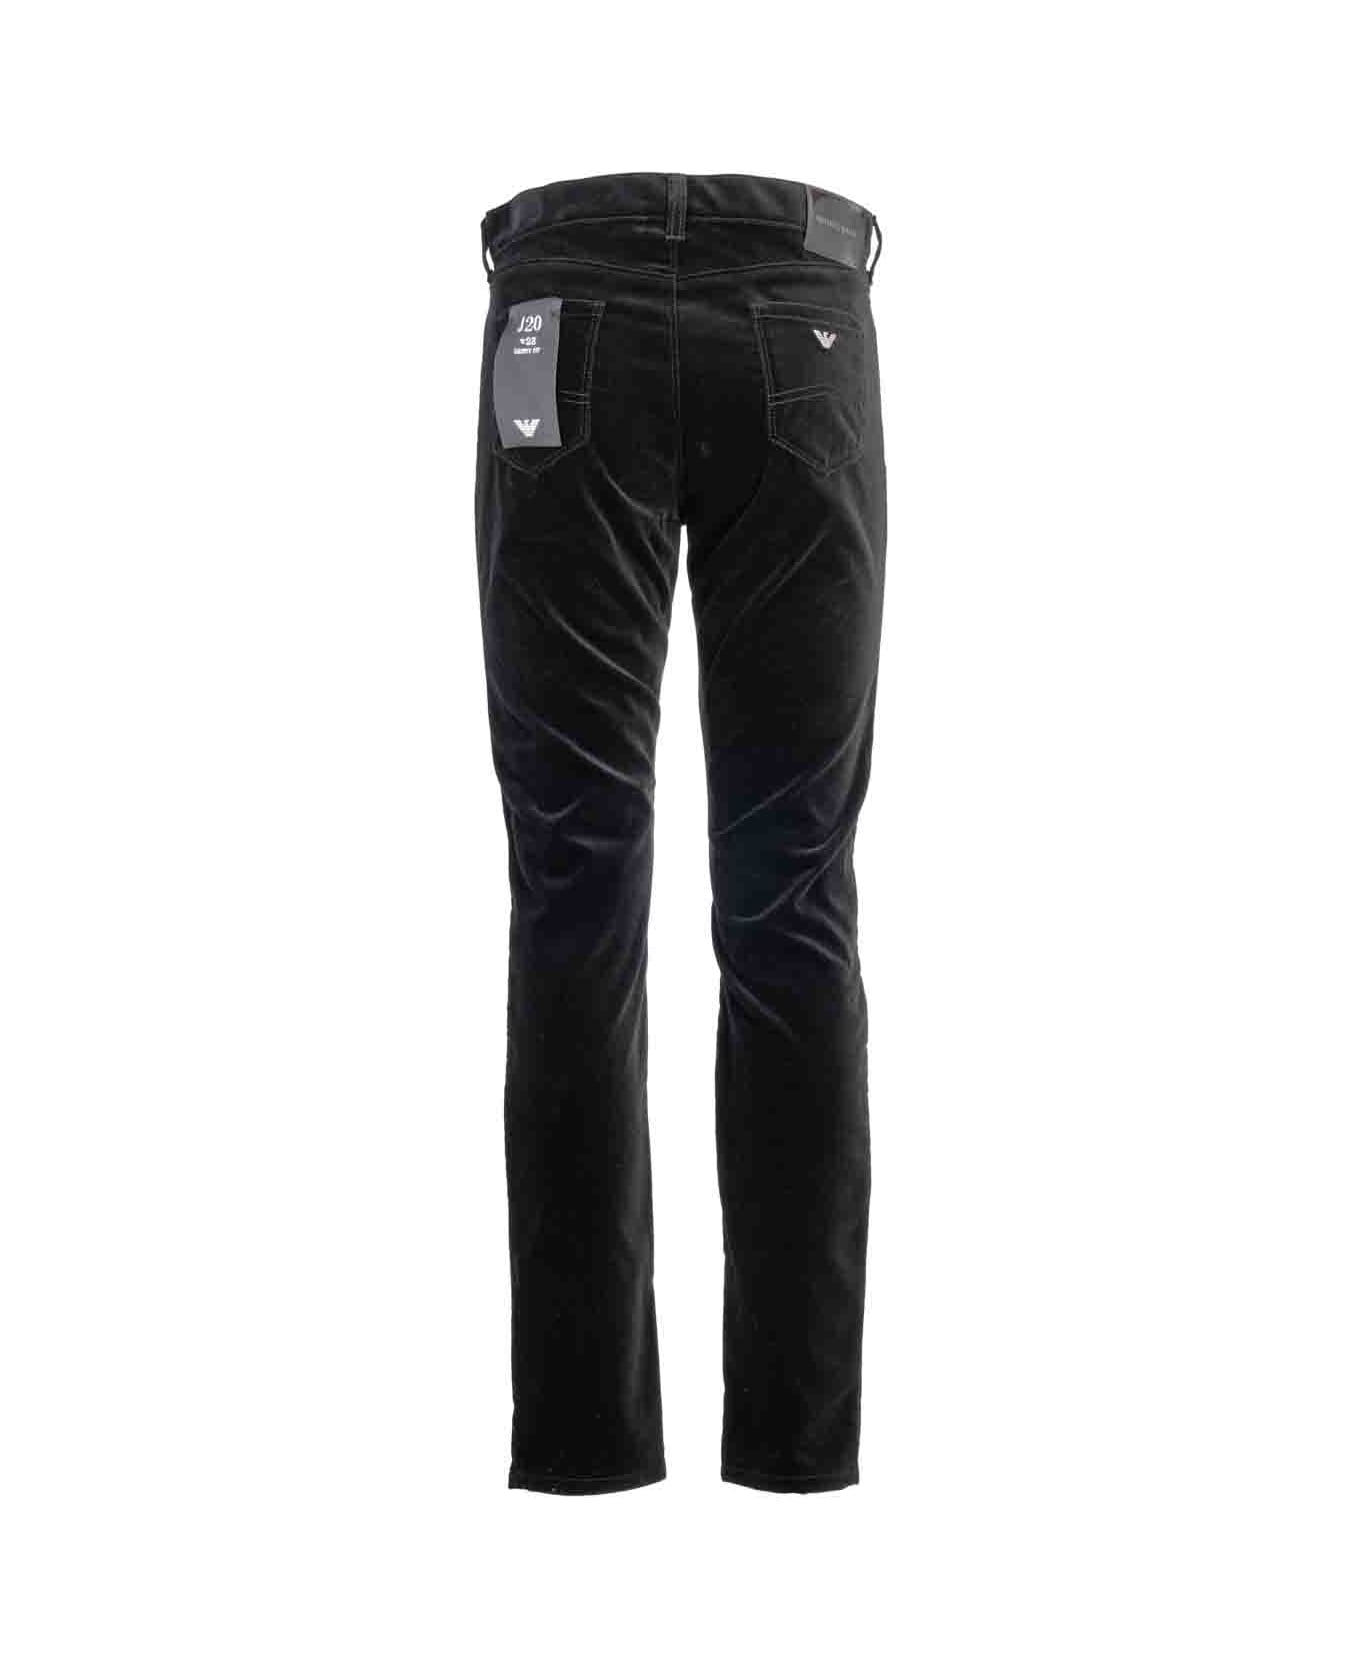 Giorgio Armani Emporio Armani Jeans Black - Black デニム